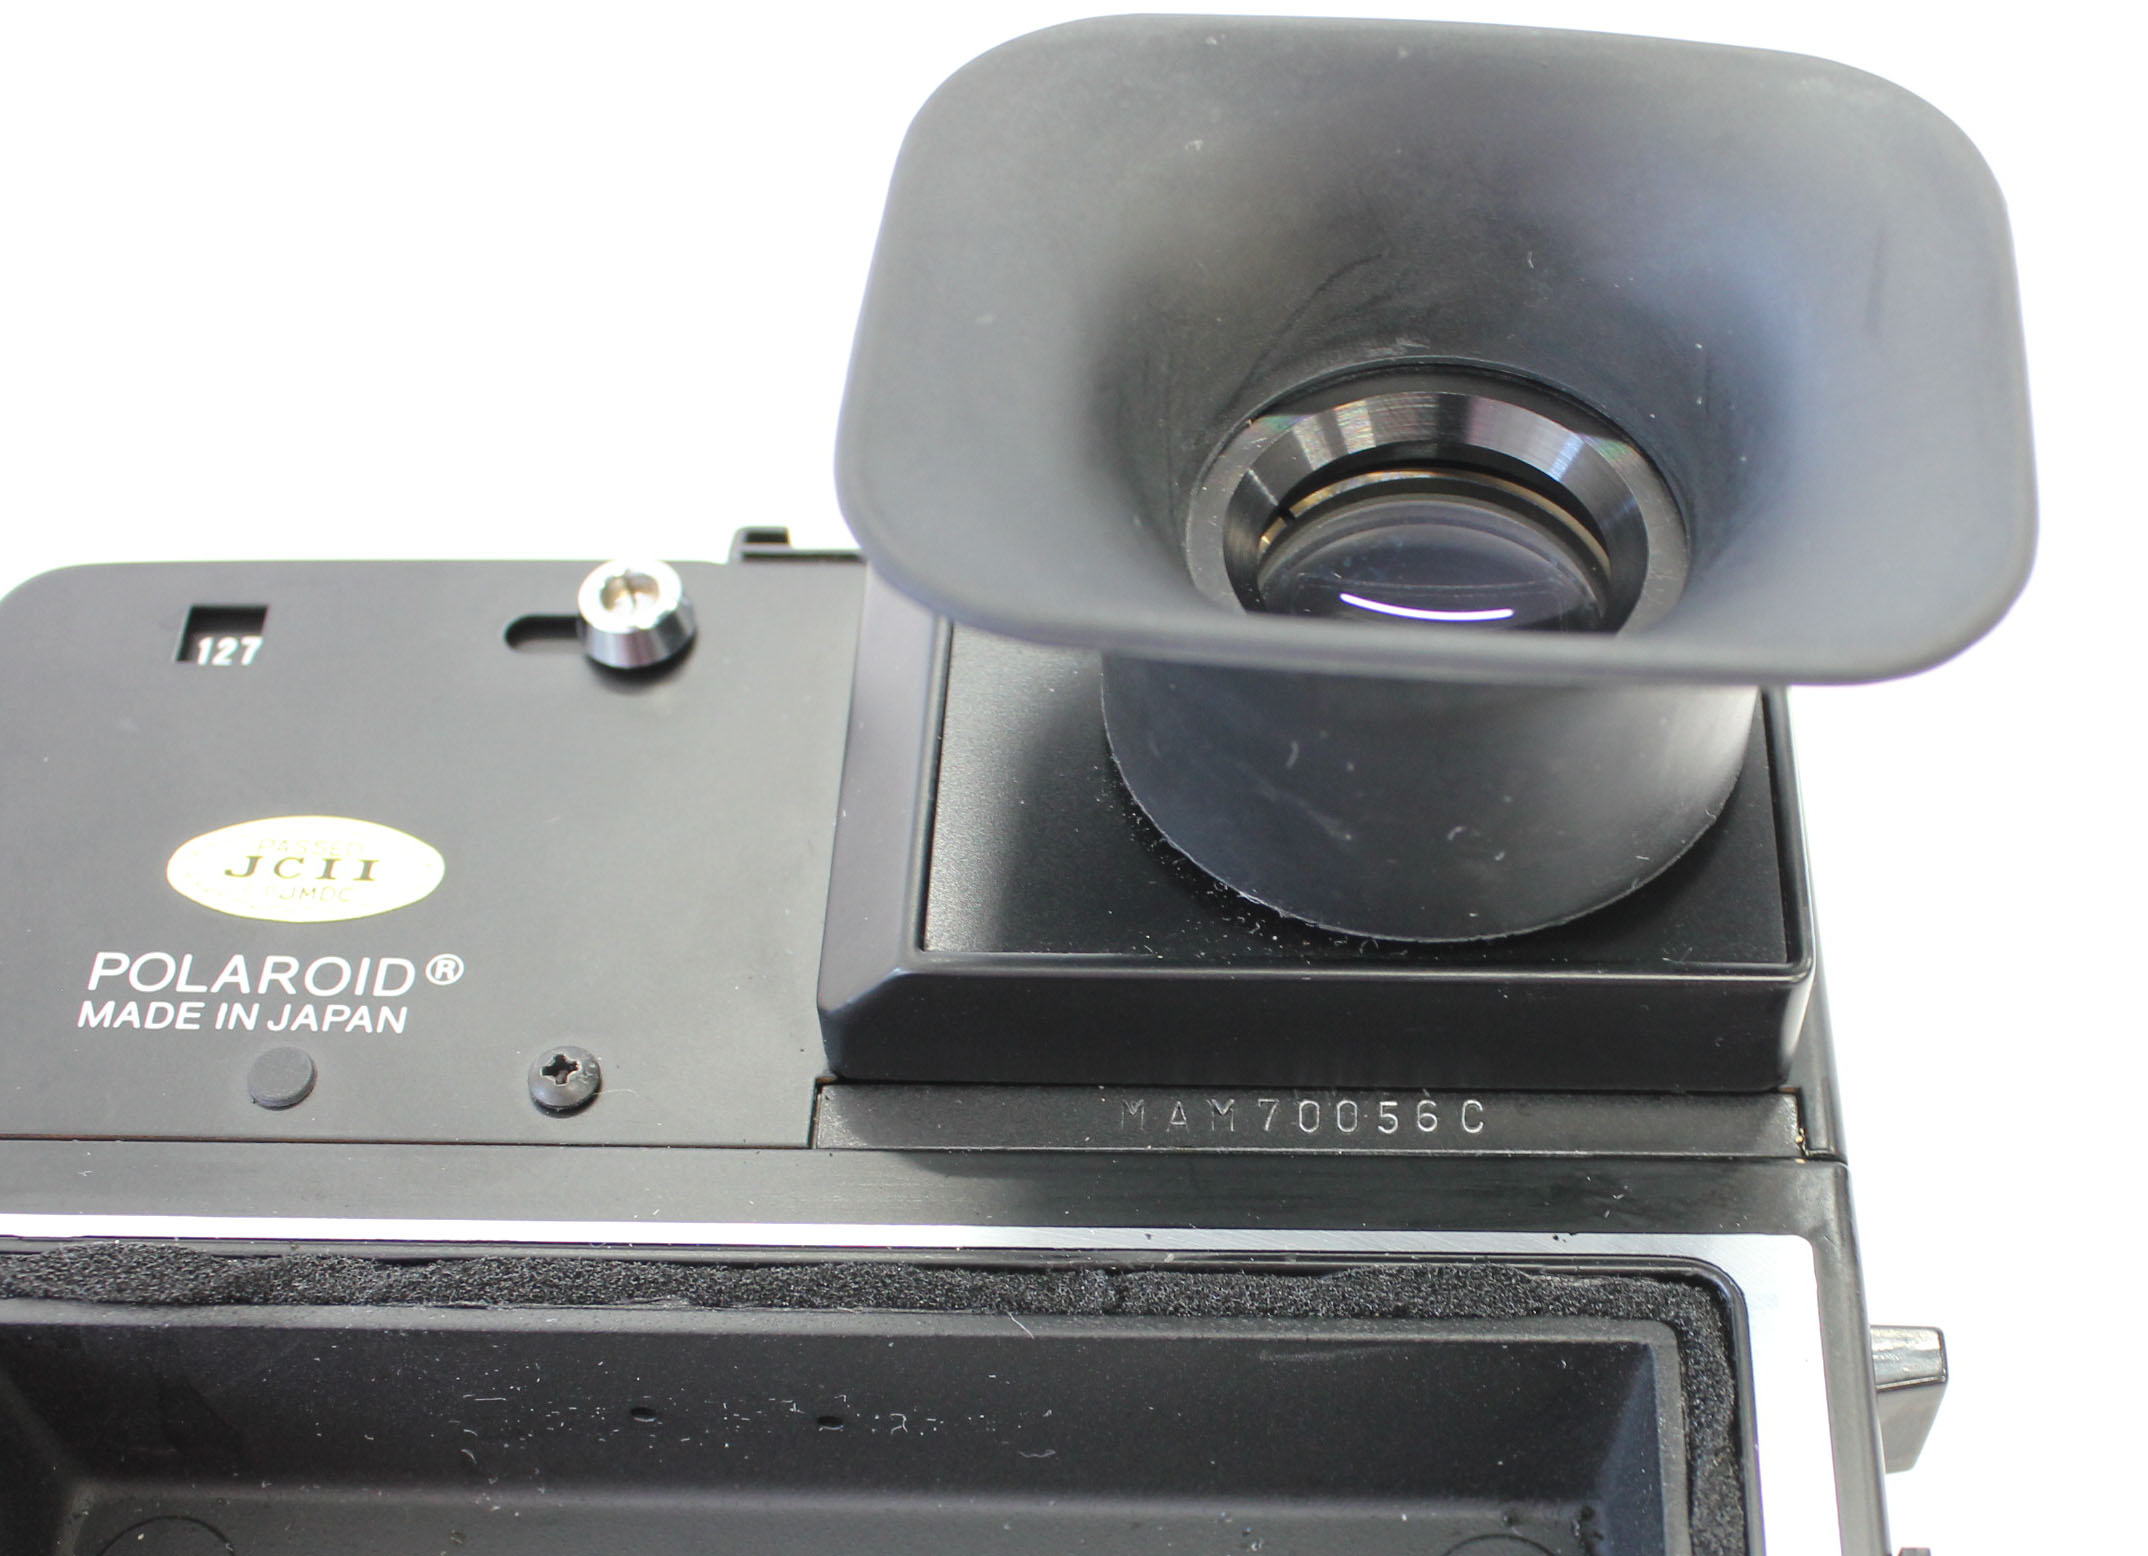  Polaroid 600SE Instant Camera w/ Mamiya 127mm F/4.7 Lens and Polaroid Back from Japan Photo 13